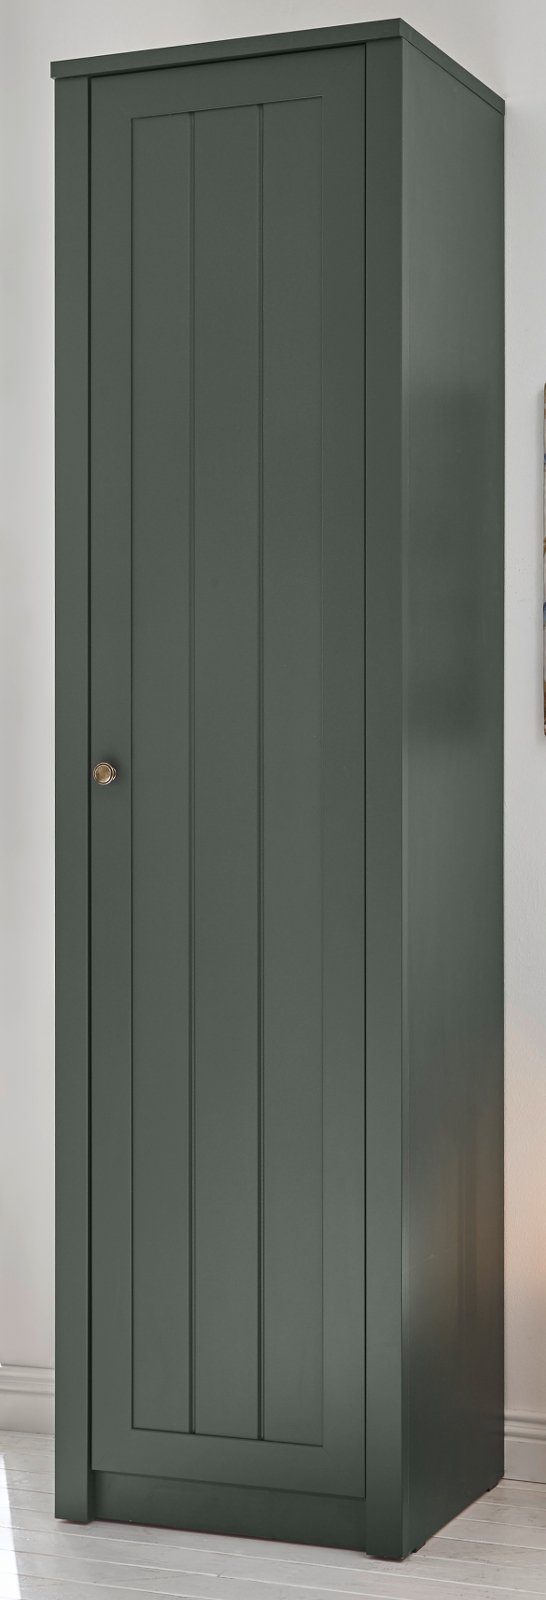 IMV Schuhschrank Forres (Flurschrank in Landhaus grün, 50 x 197 cm) mit viel Stauraum | Schuhschränke